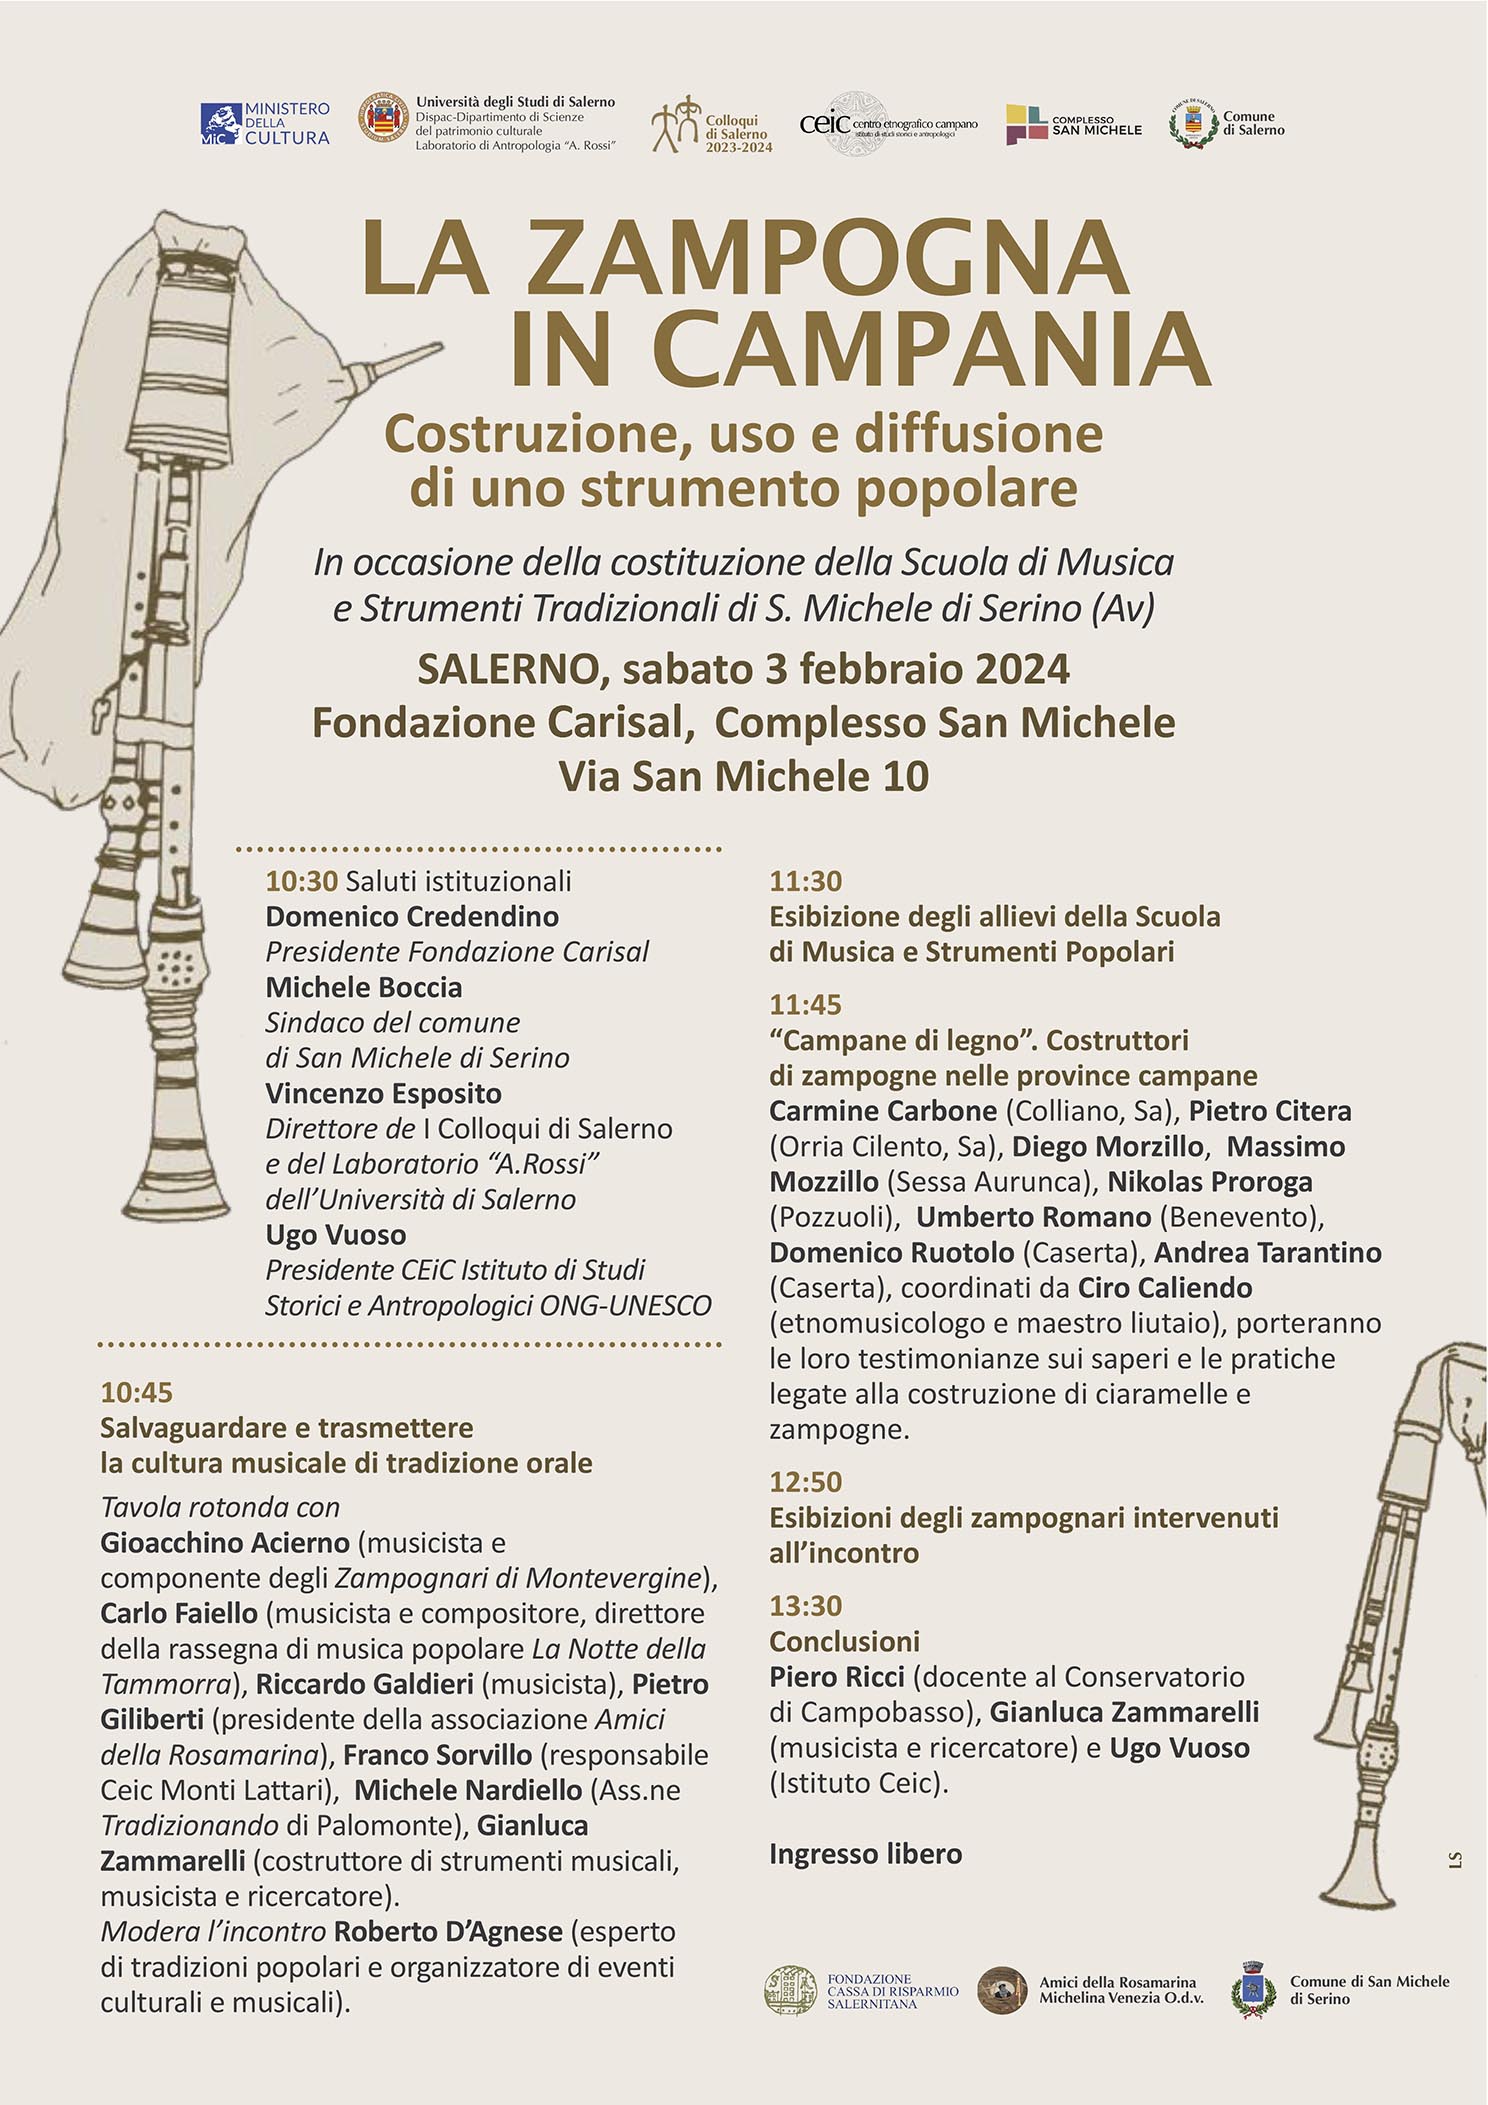 Salerno: Carisal, a Complesso San Michele “La zampogna in Campania”